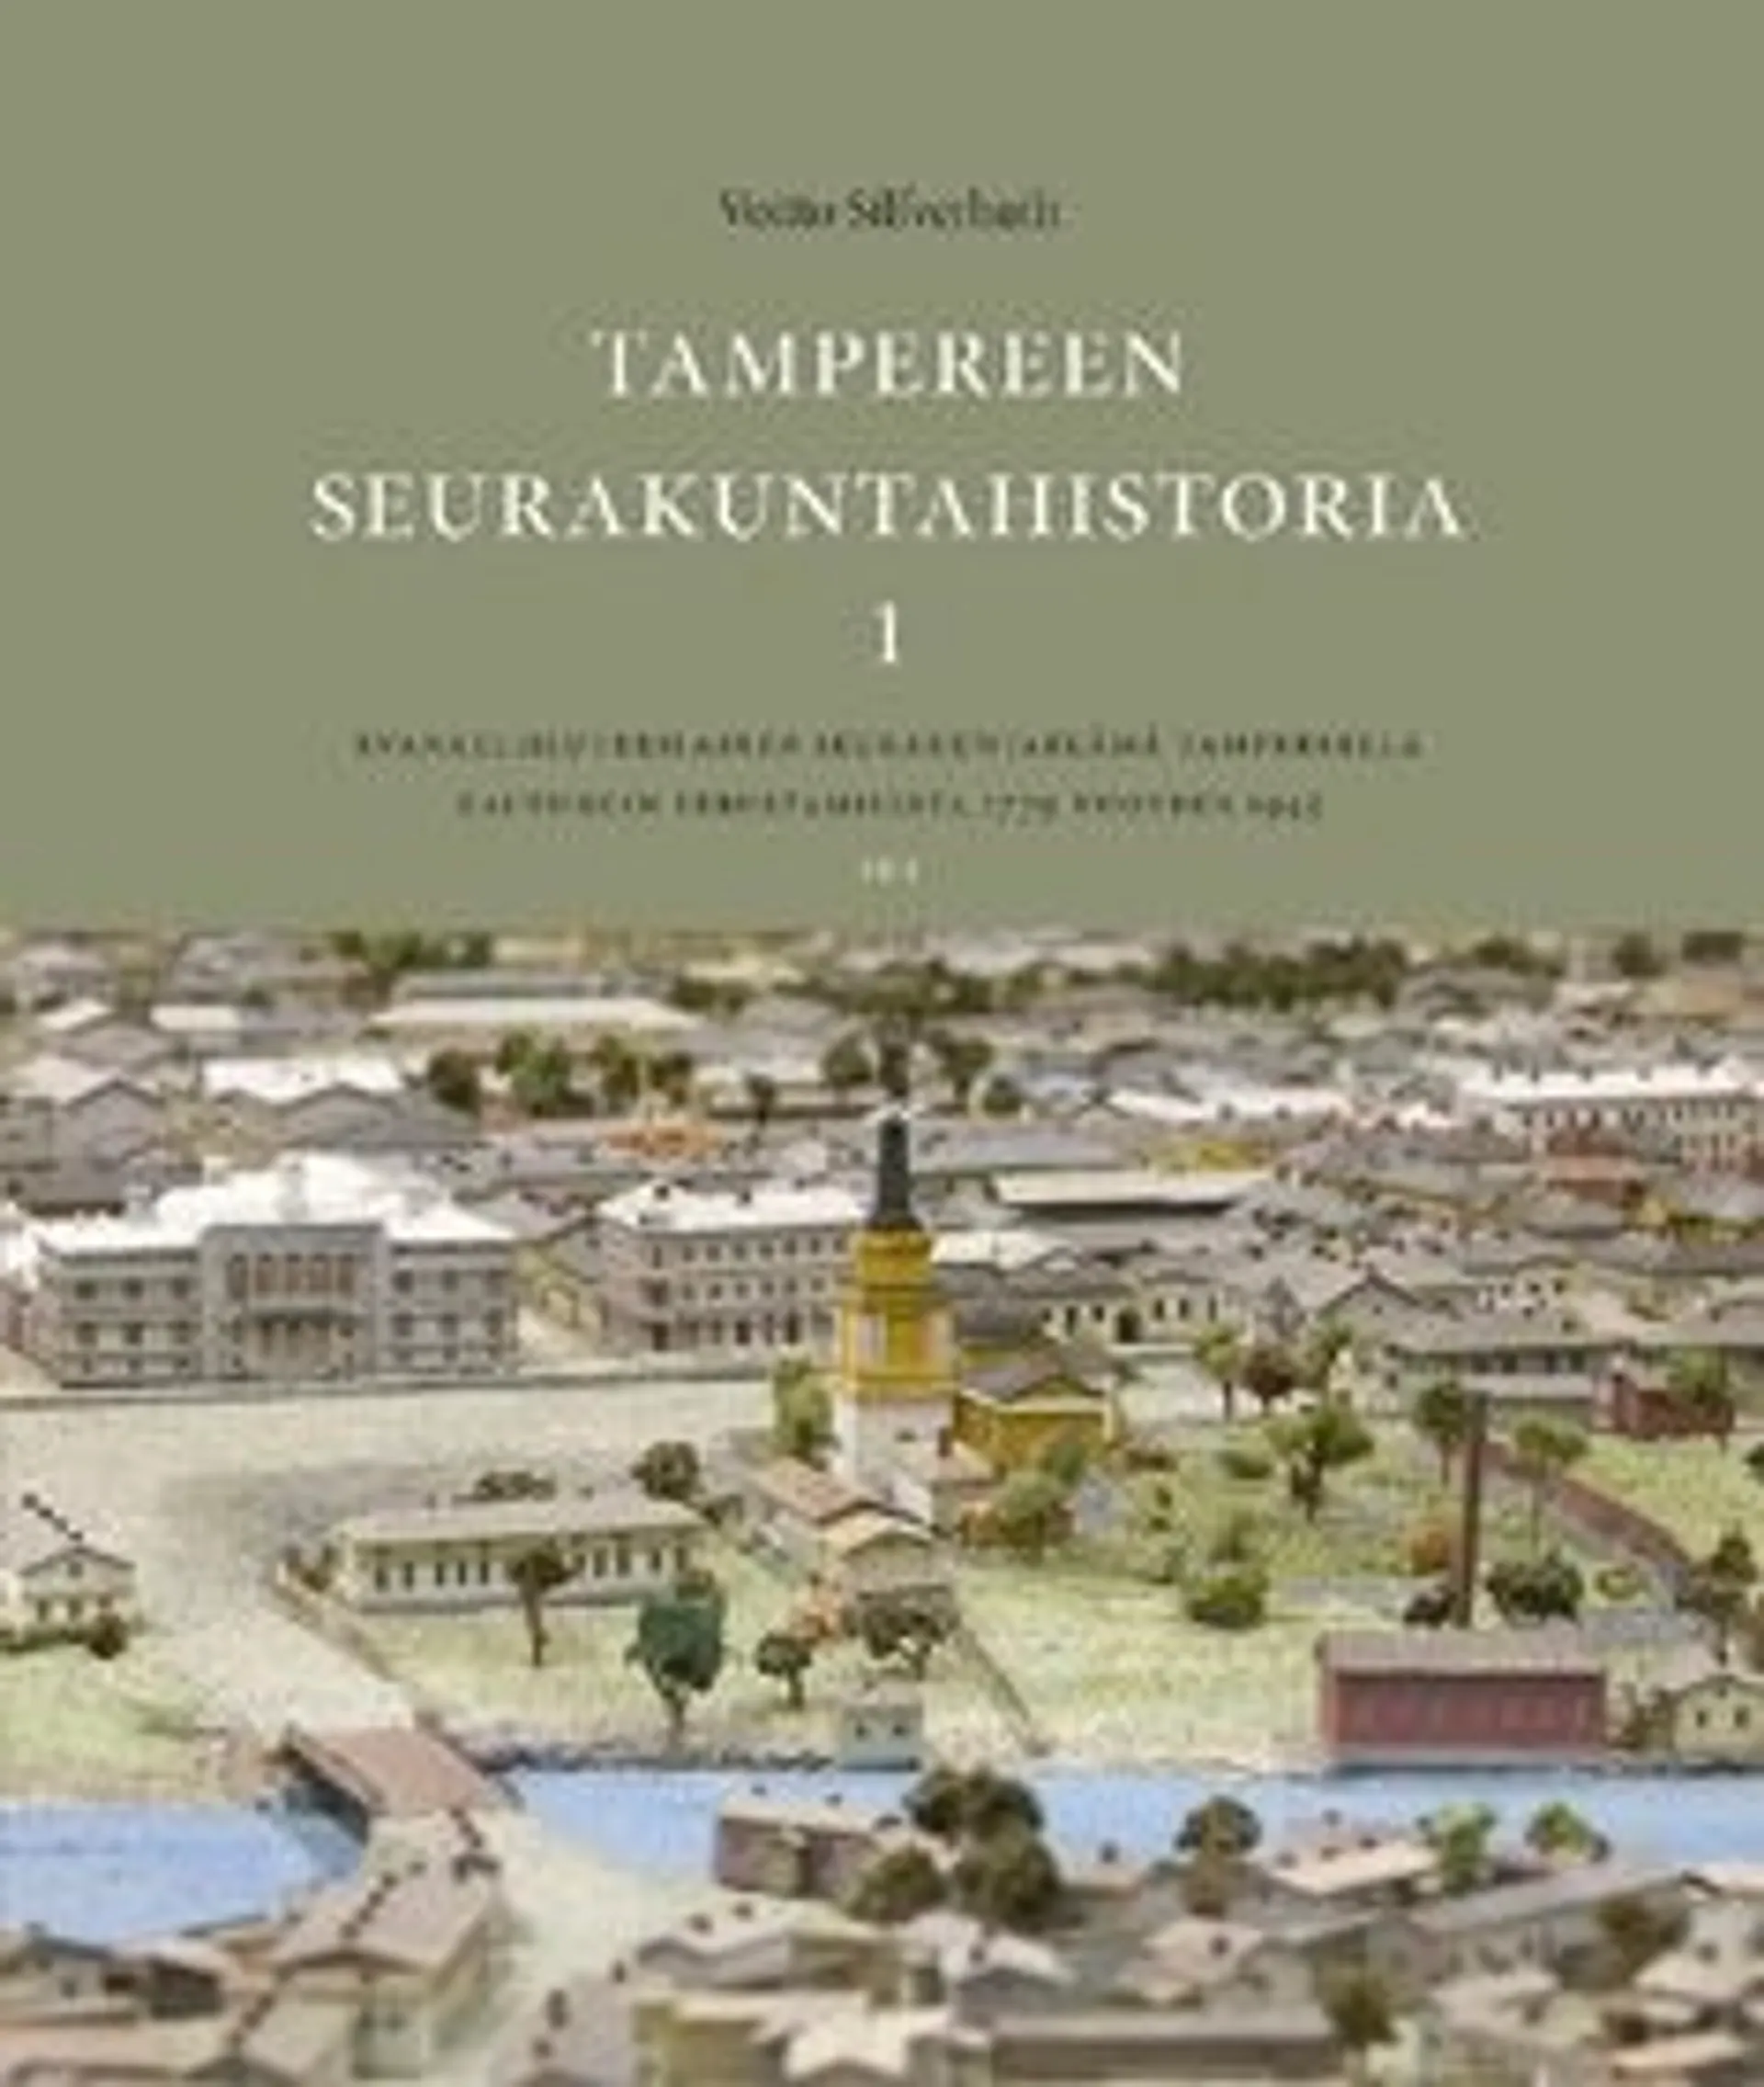 Silfverhuth, Tampereen seurakuntahistoria 1-2